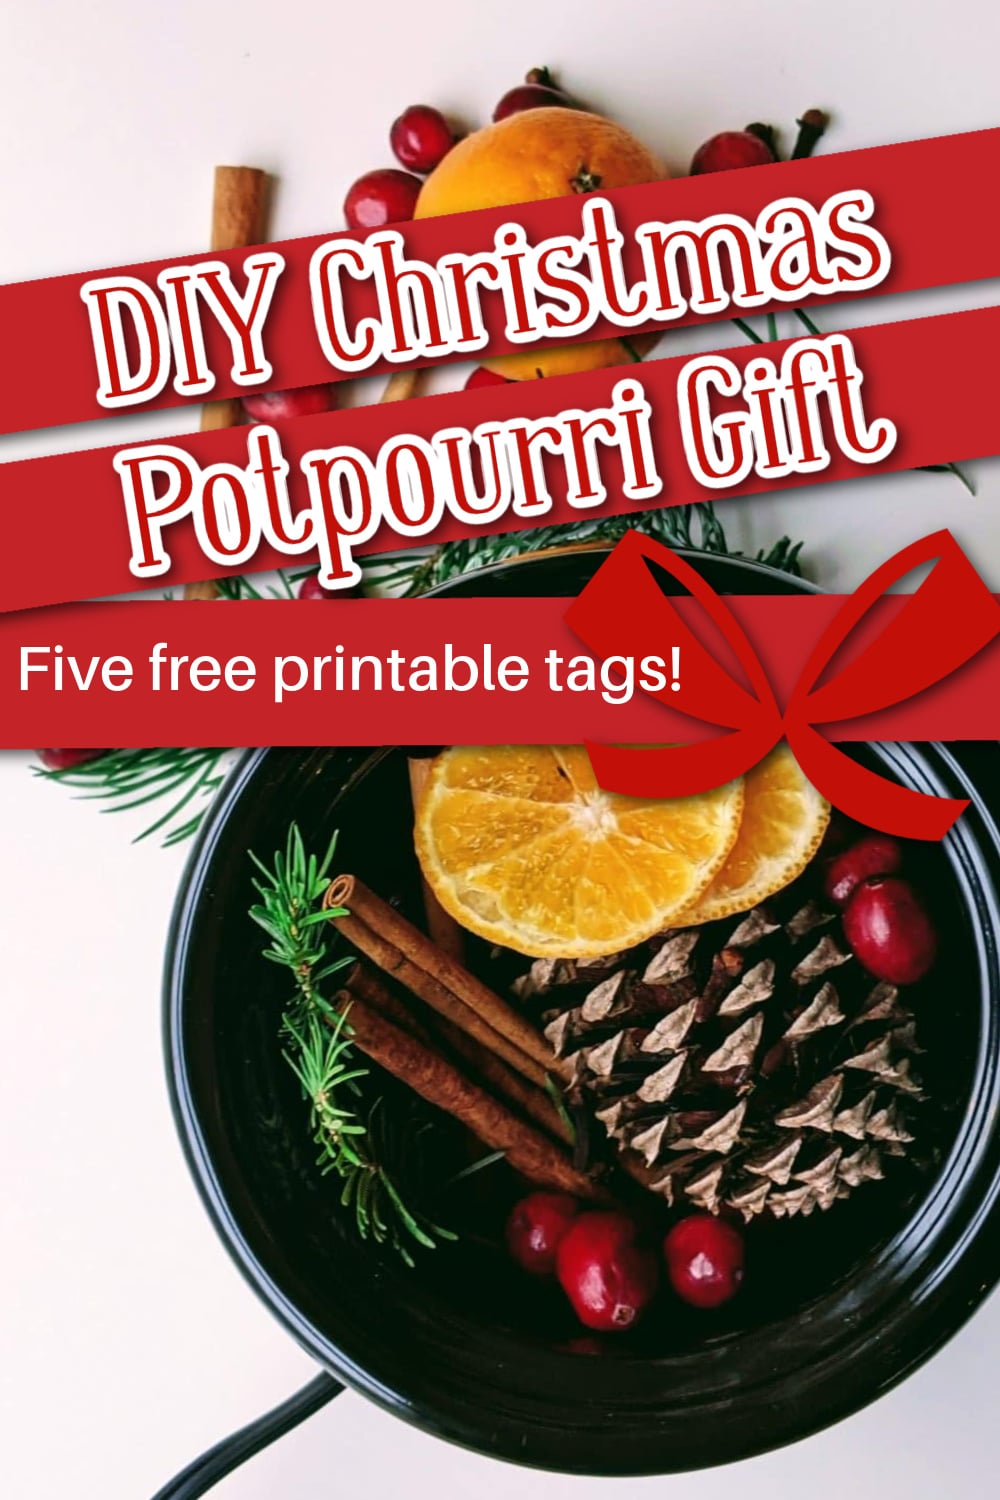 DIY Stovetop Christmas Potpourri Gift + Printable Tags